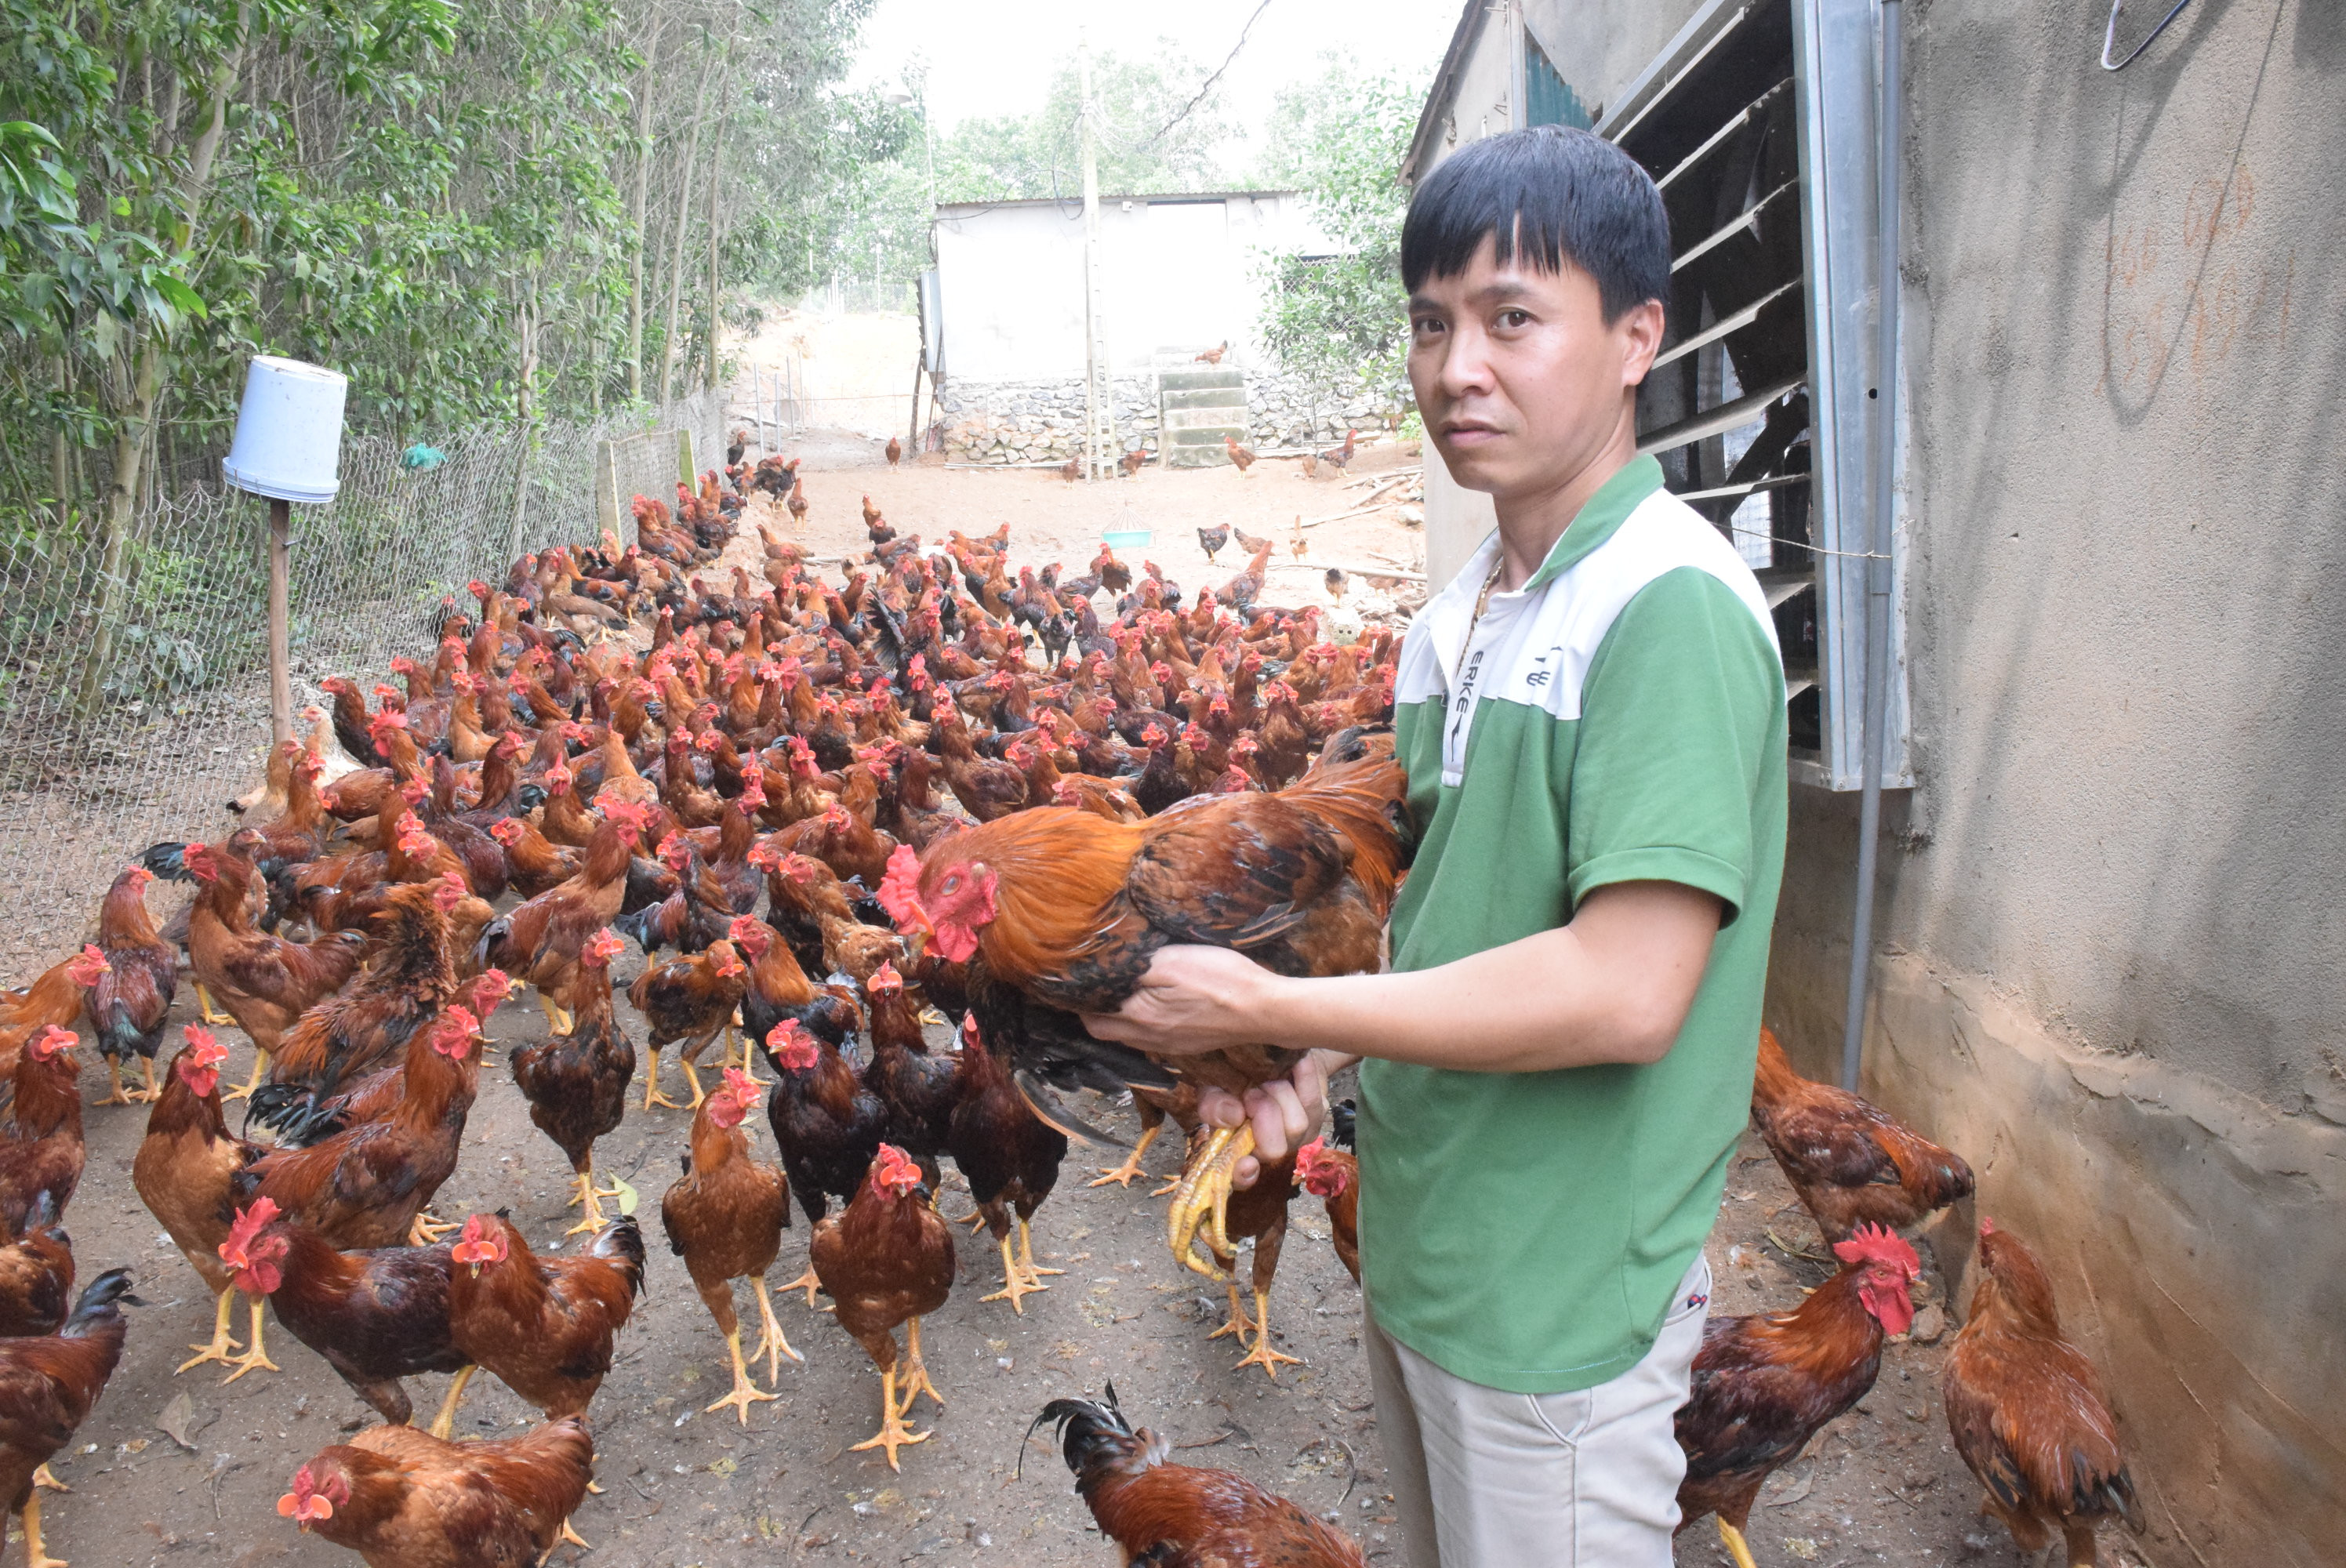 Anh Lê Văn Hưng chủ trang trại nuôi gà trên địa bàn xóm 6A, xã Tiến Thành (Yên Thành) buồn chán, vì giá gà giảm, khó tiêu thụ. Ảnh: Xuân Hoàng